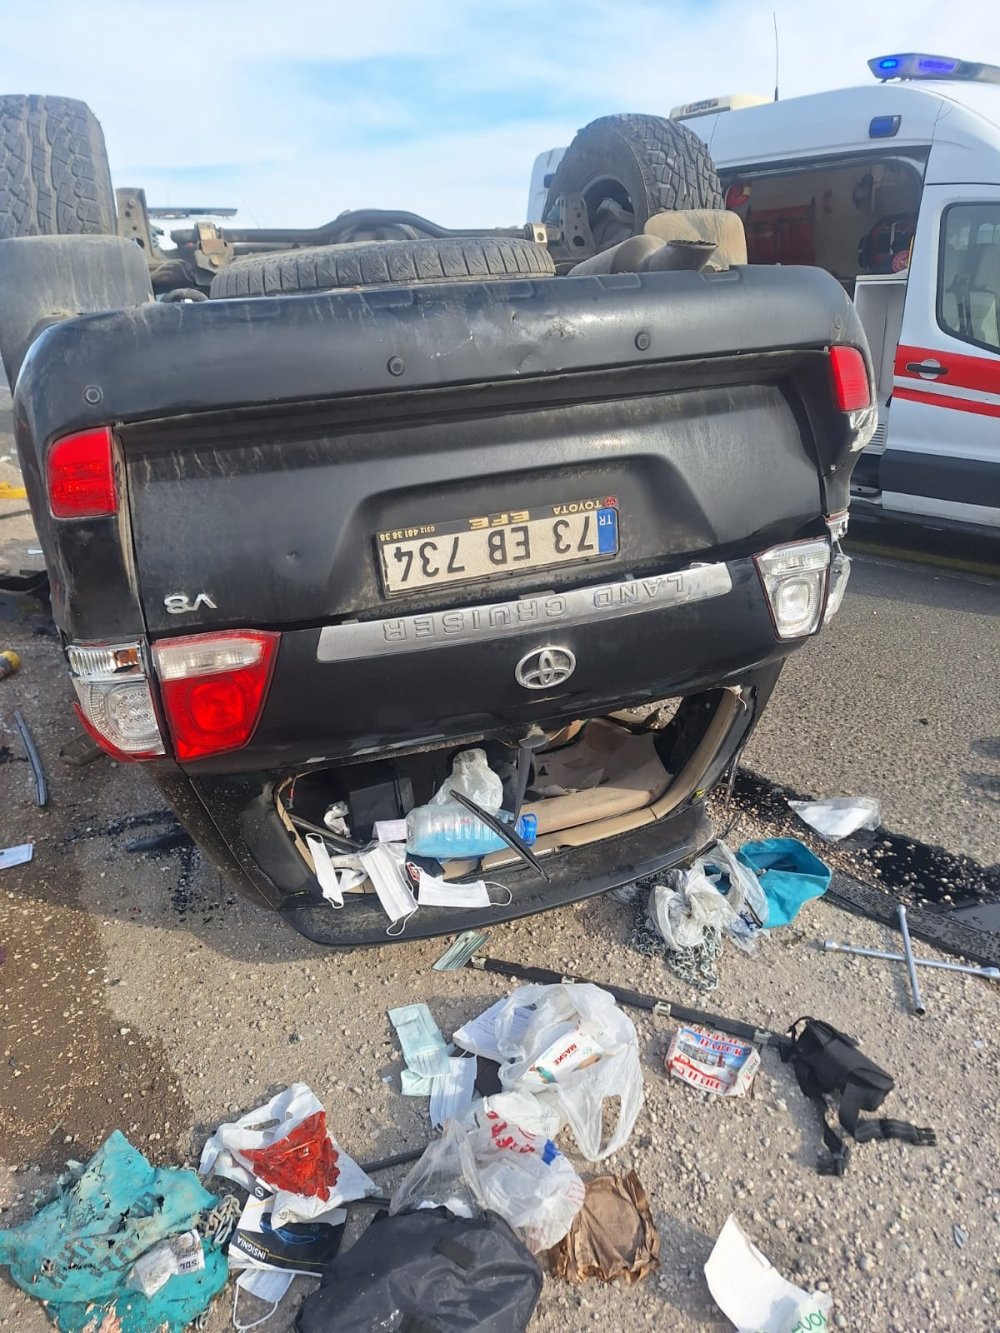 Şırnak’ta trafik kazası: 1 polis şehit, 2 polis yaralı